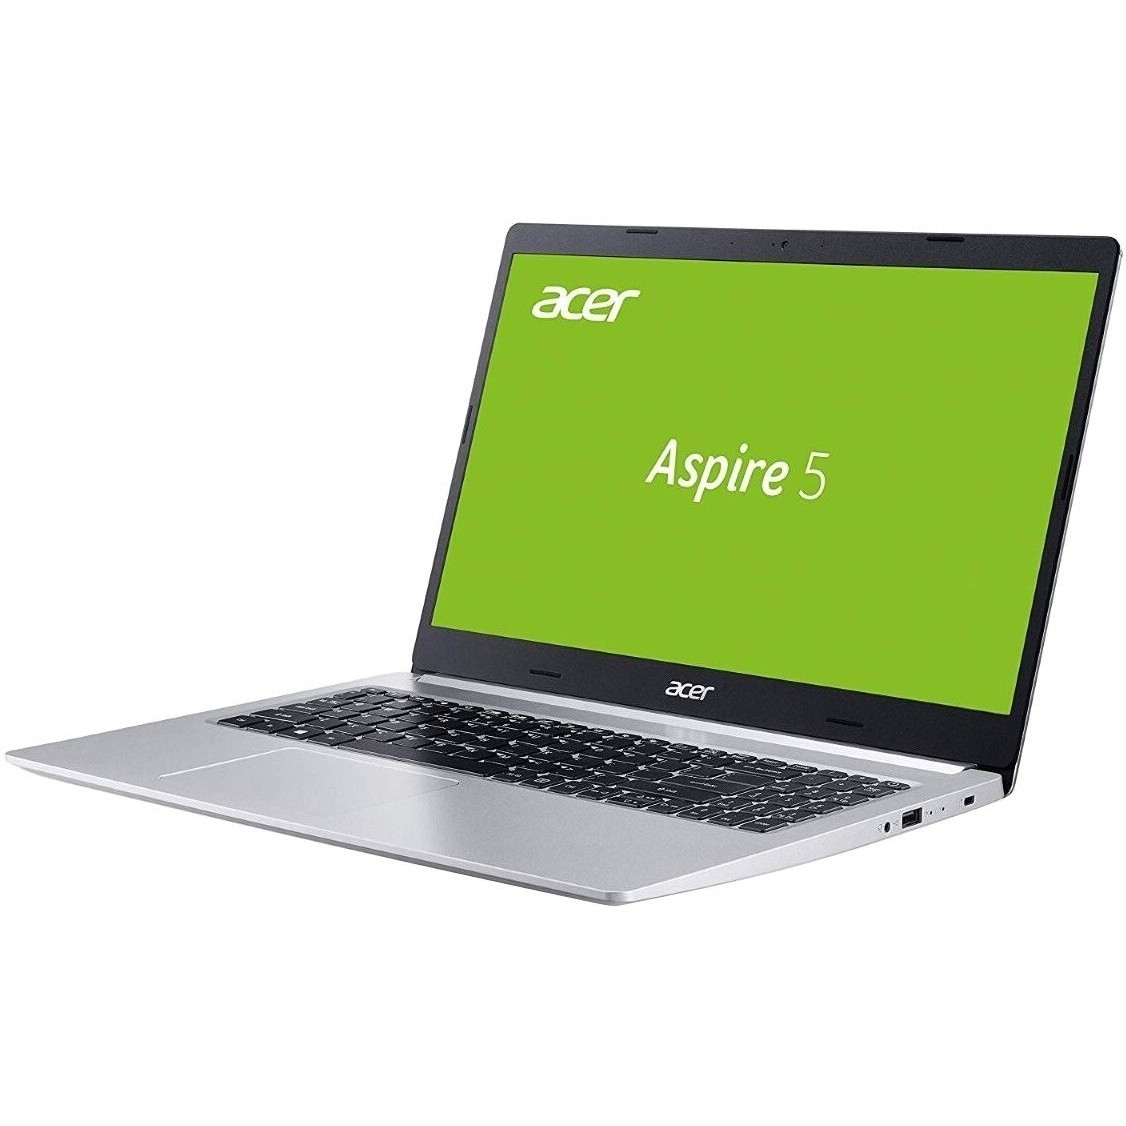 Aspire 5 цена. Acer Aspire 5 a515-54. Acer Aspire 5 n20c5. Тонкий ноутбук Acer Aspire 5. Acer Aspire 5 (a515-51g).